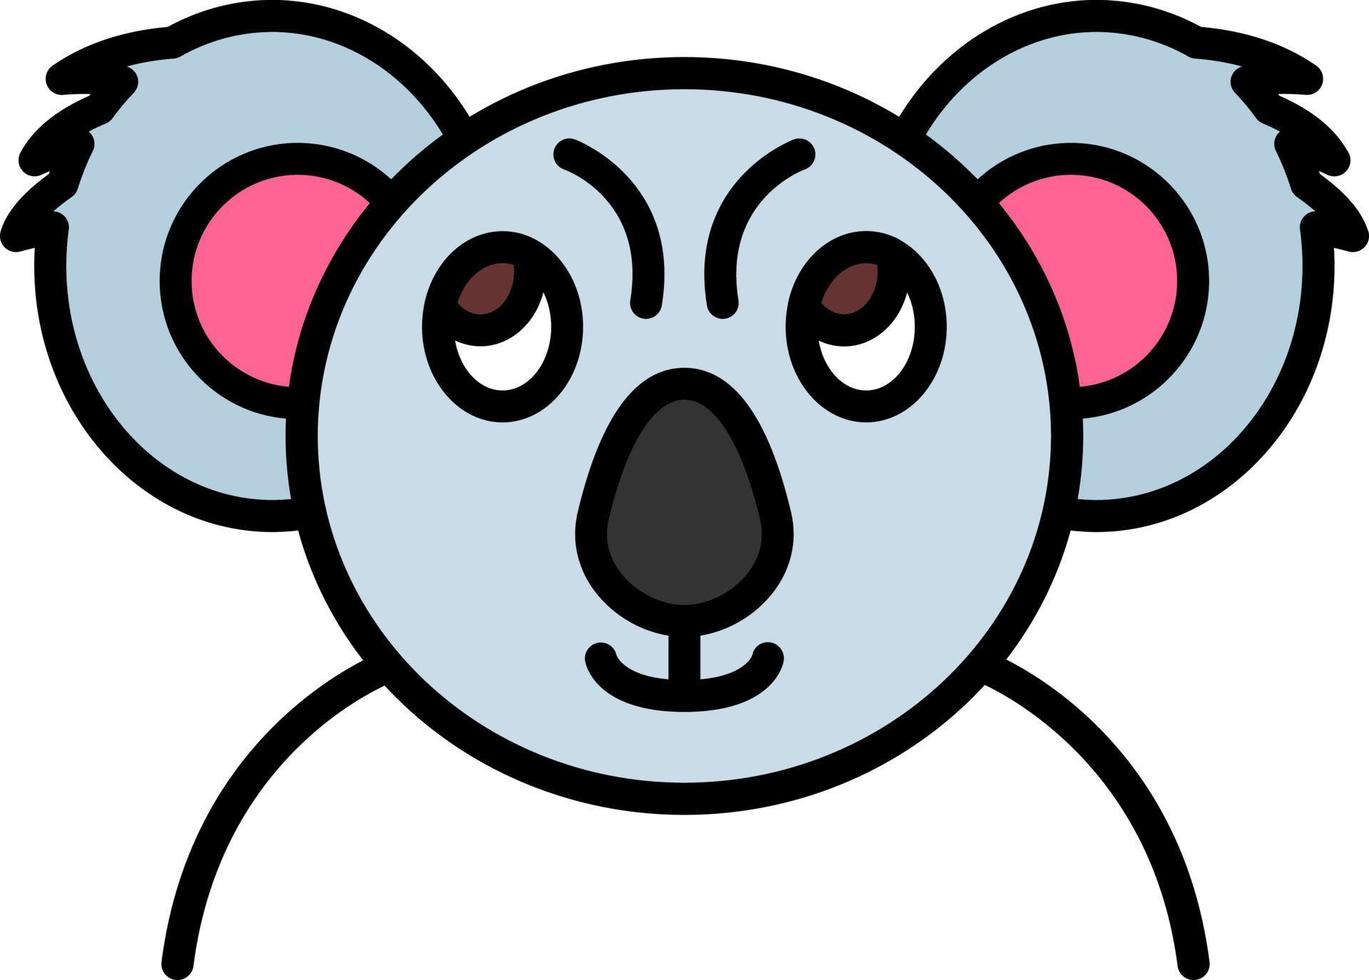 Koala Creative Icon Design vector